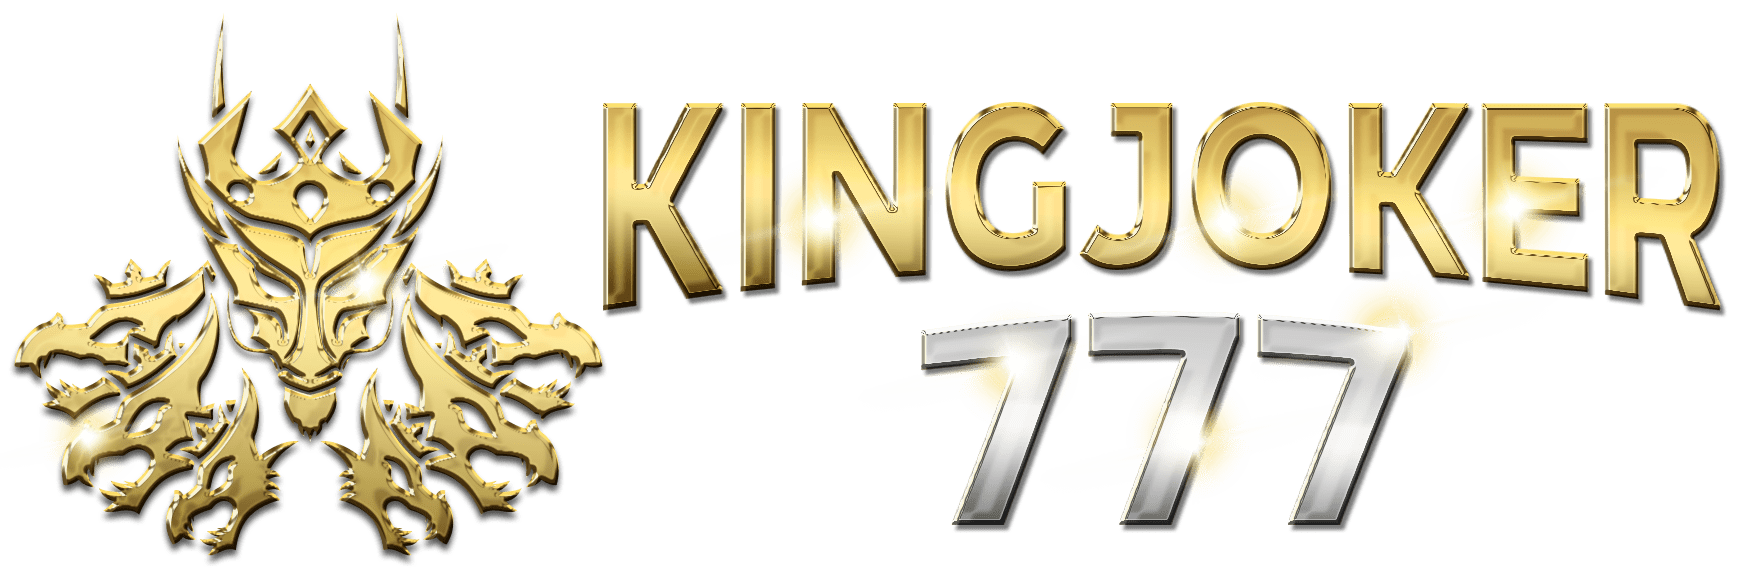 KINGJOKER777 logo